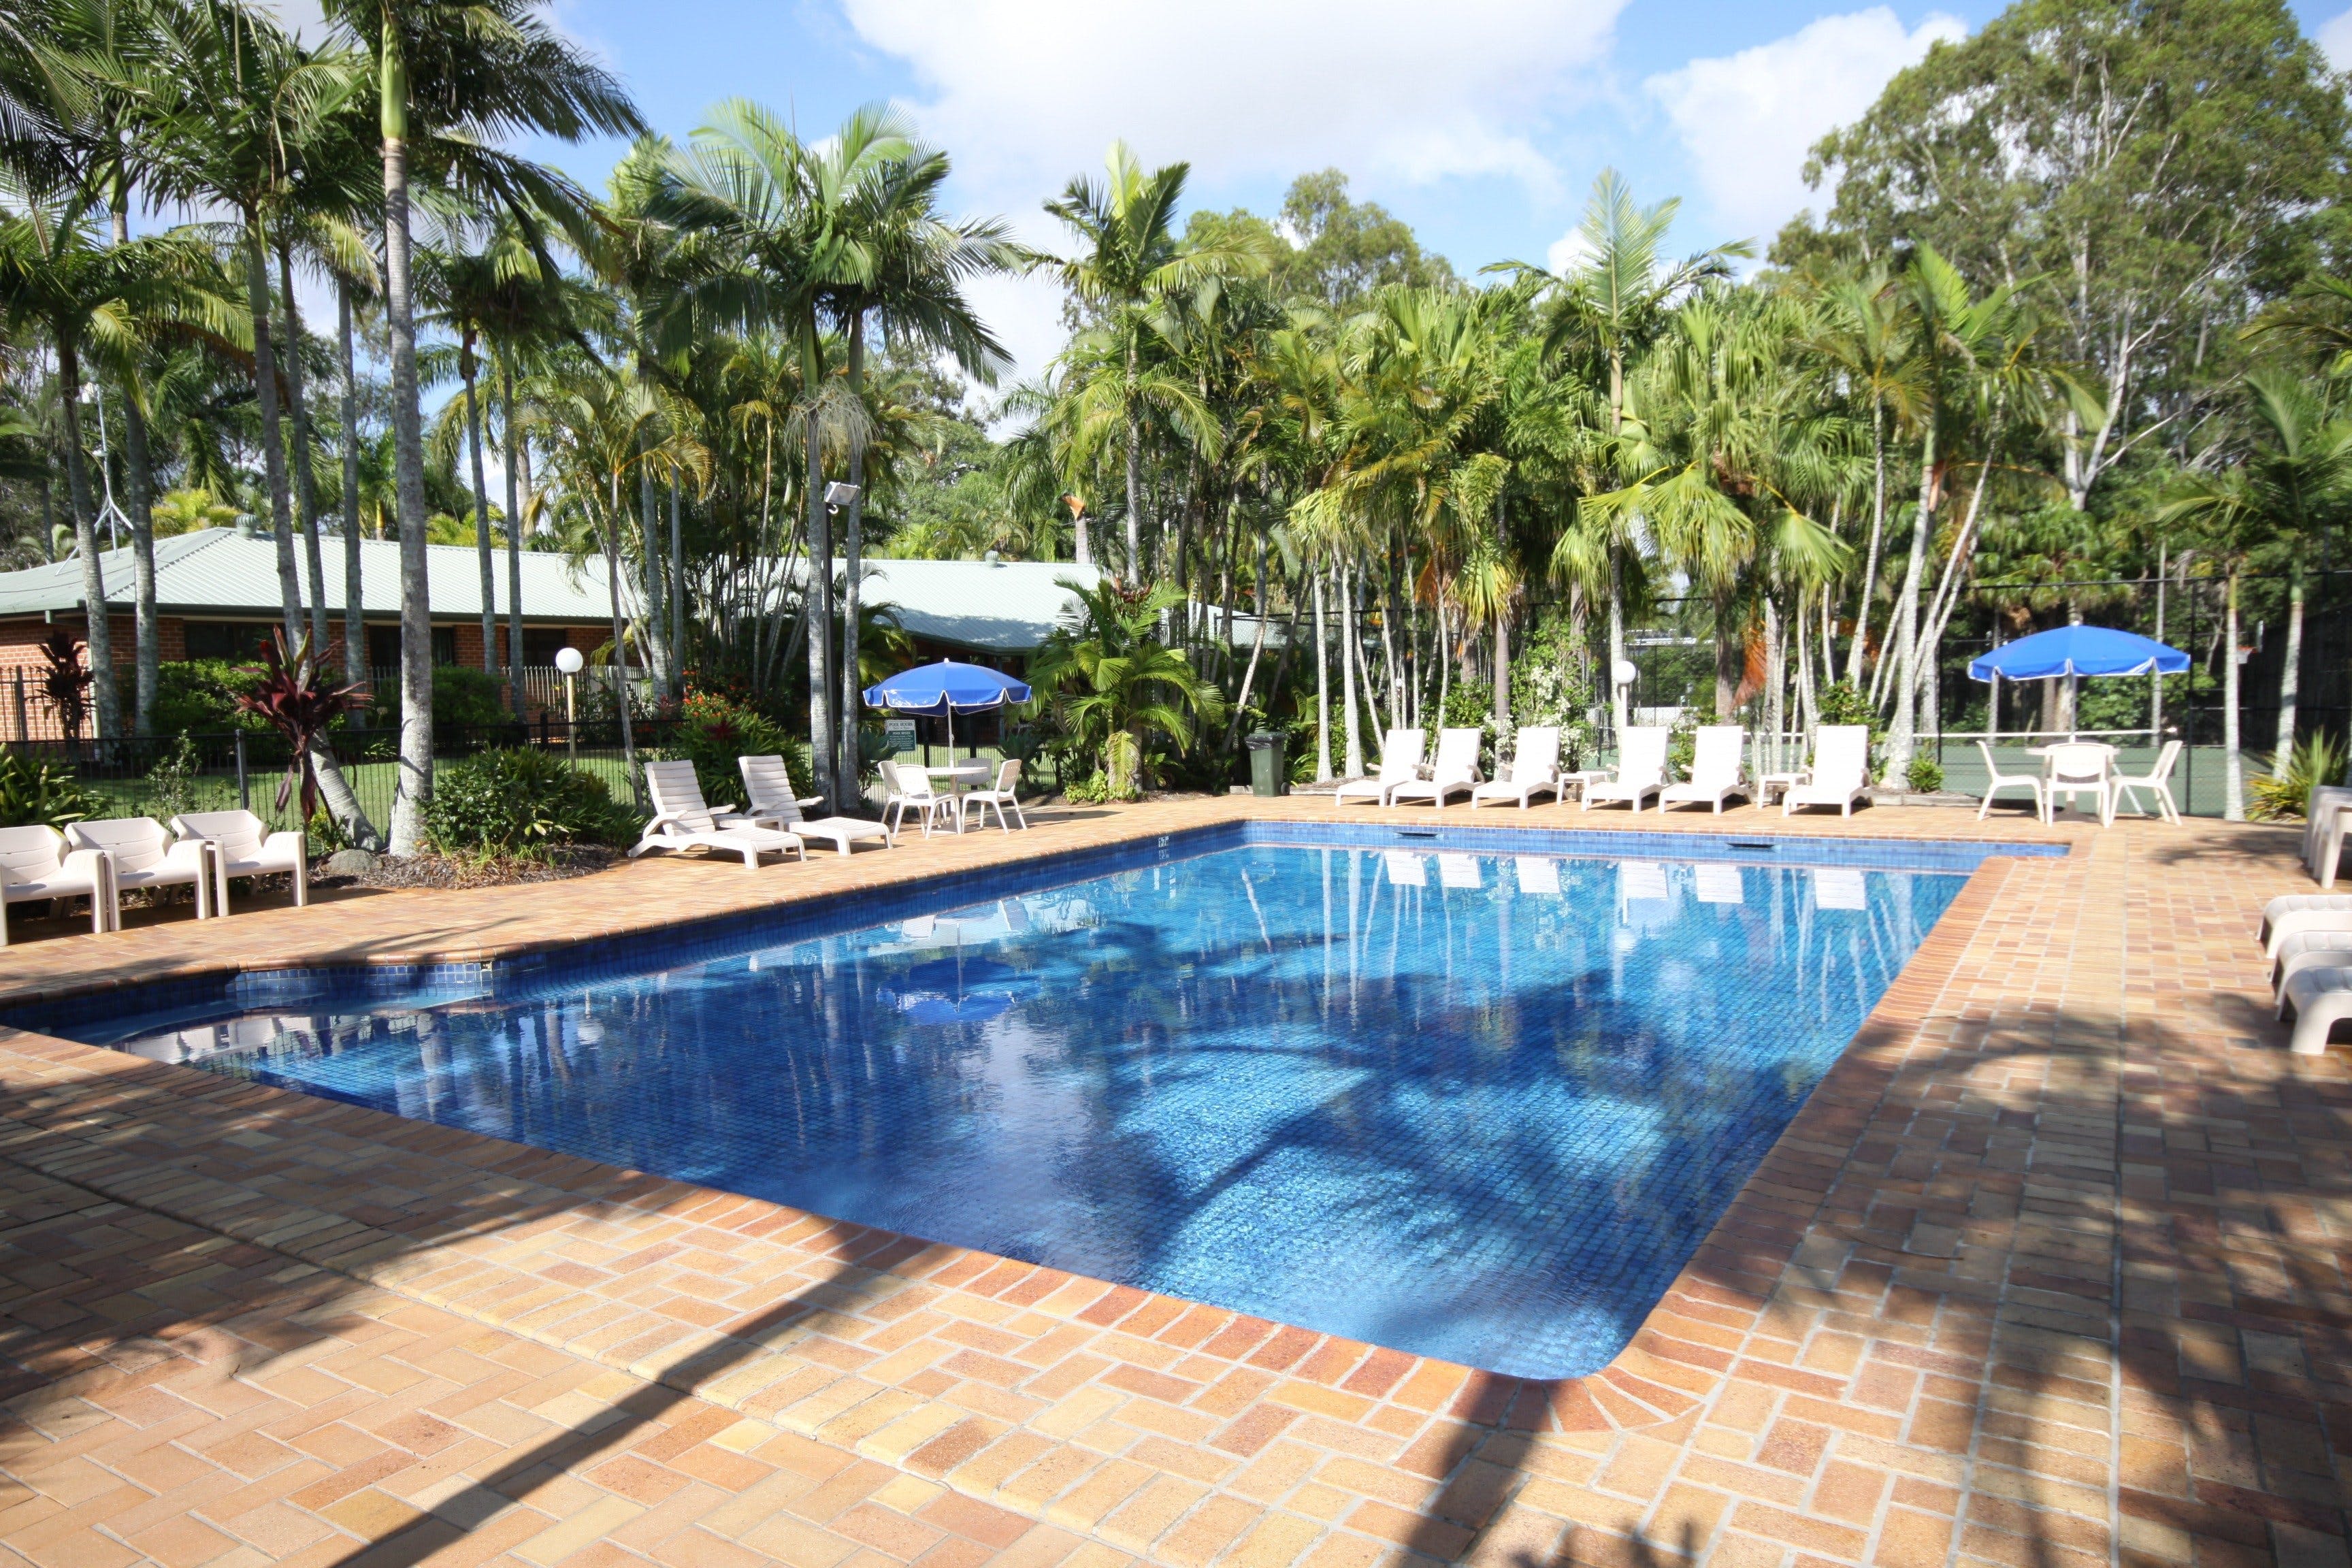 Brisbane Gateway Resort - Accommodation Australia